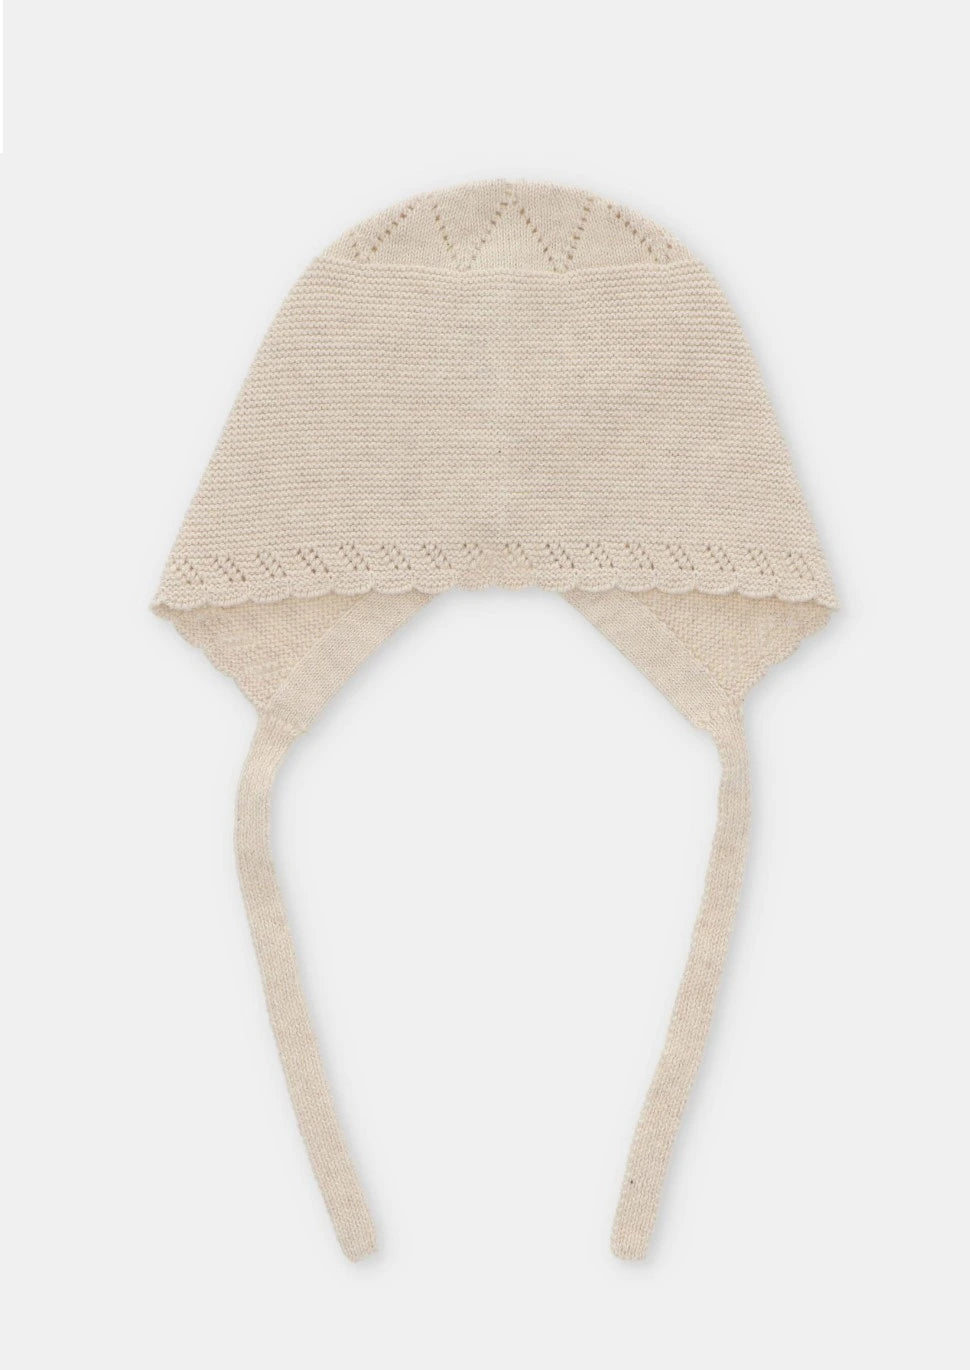 Beige Knit Bonnet With Ties by martin aranda 